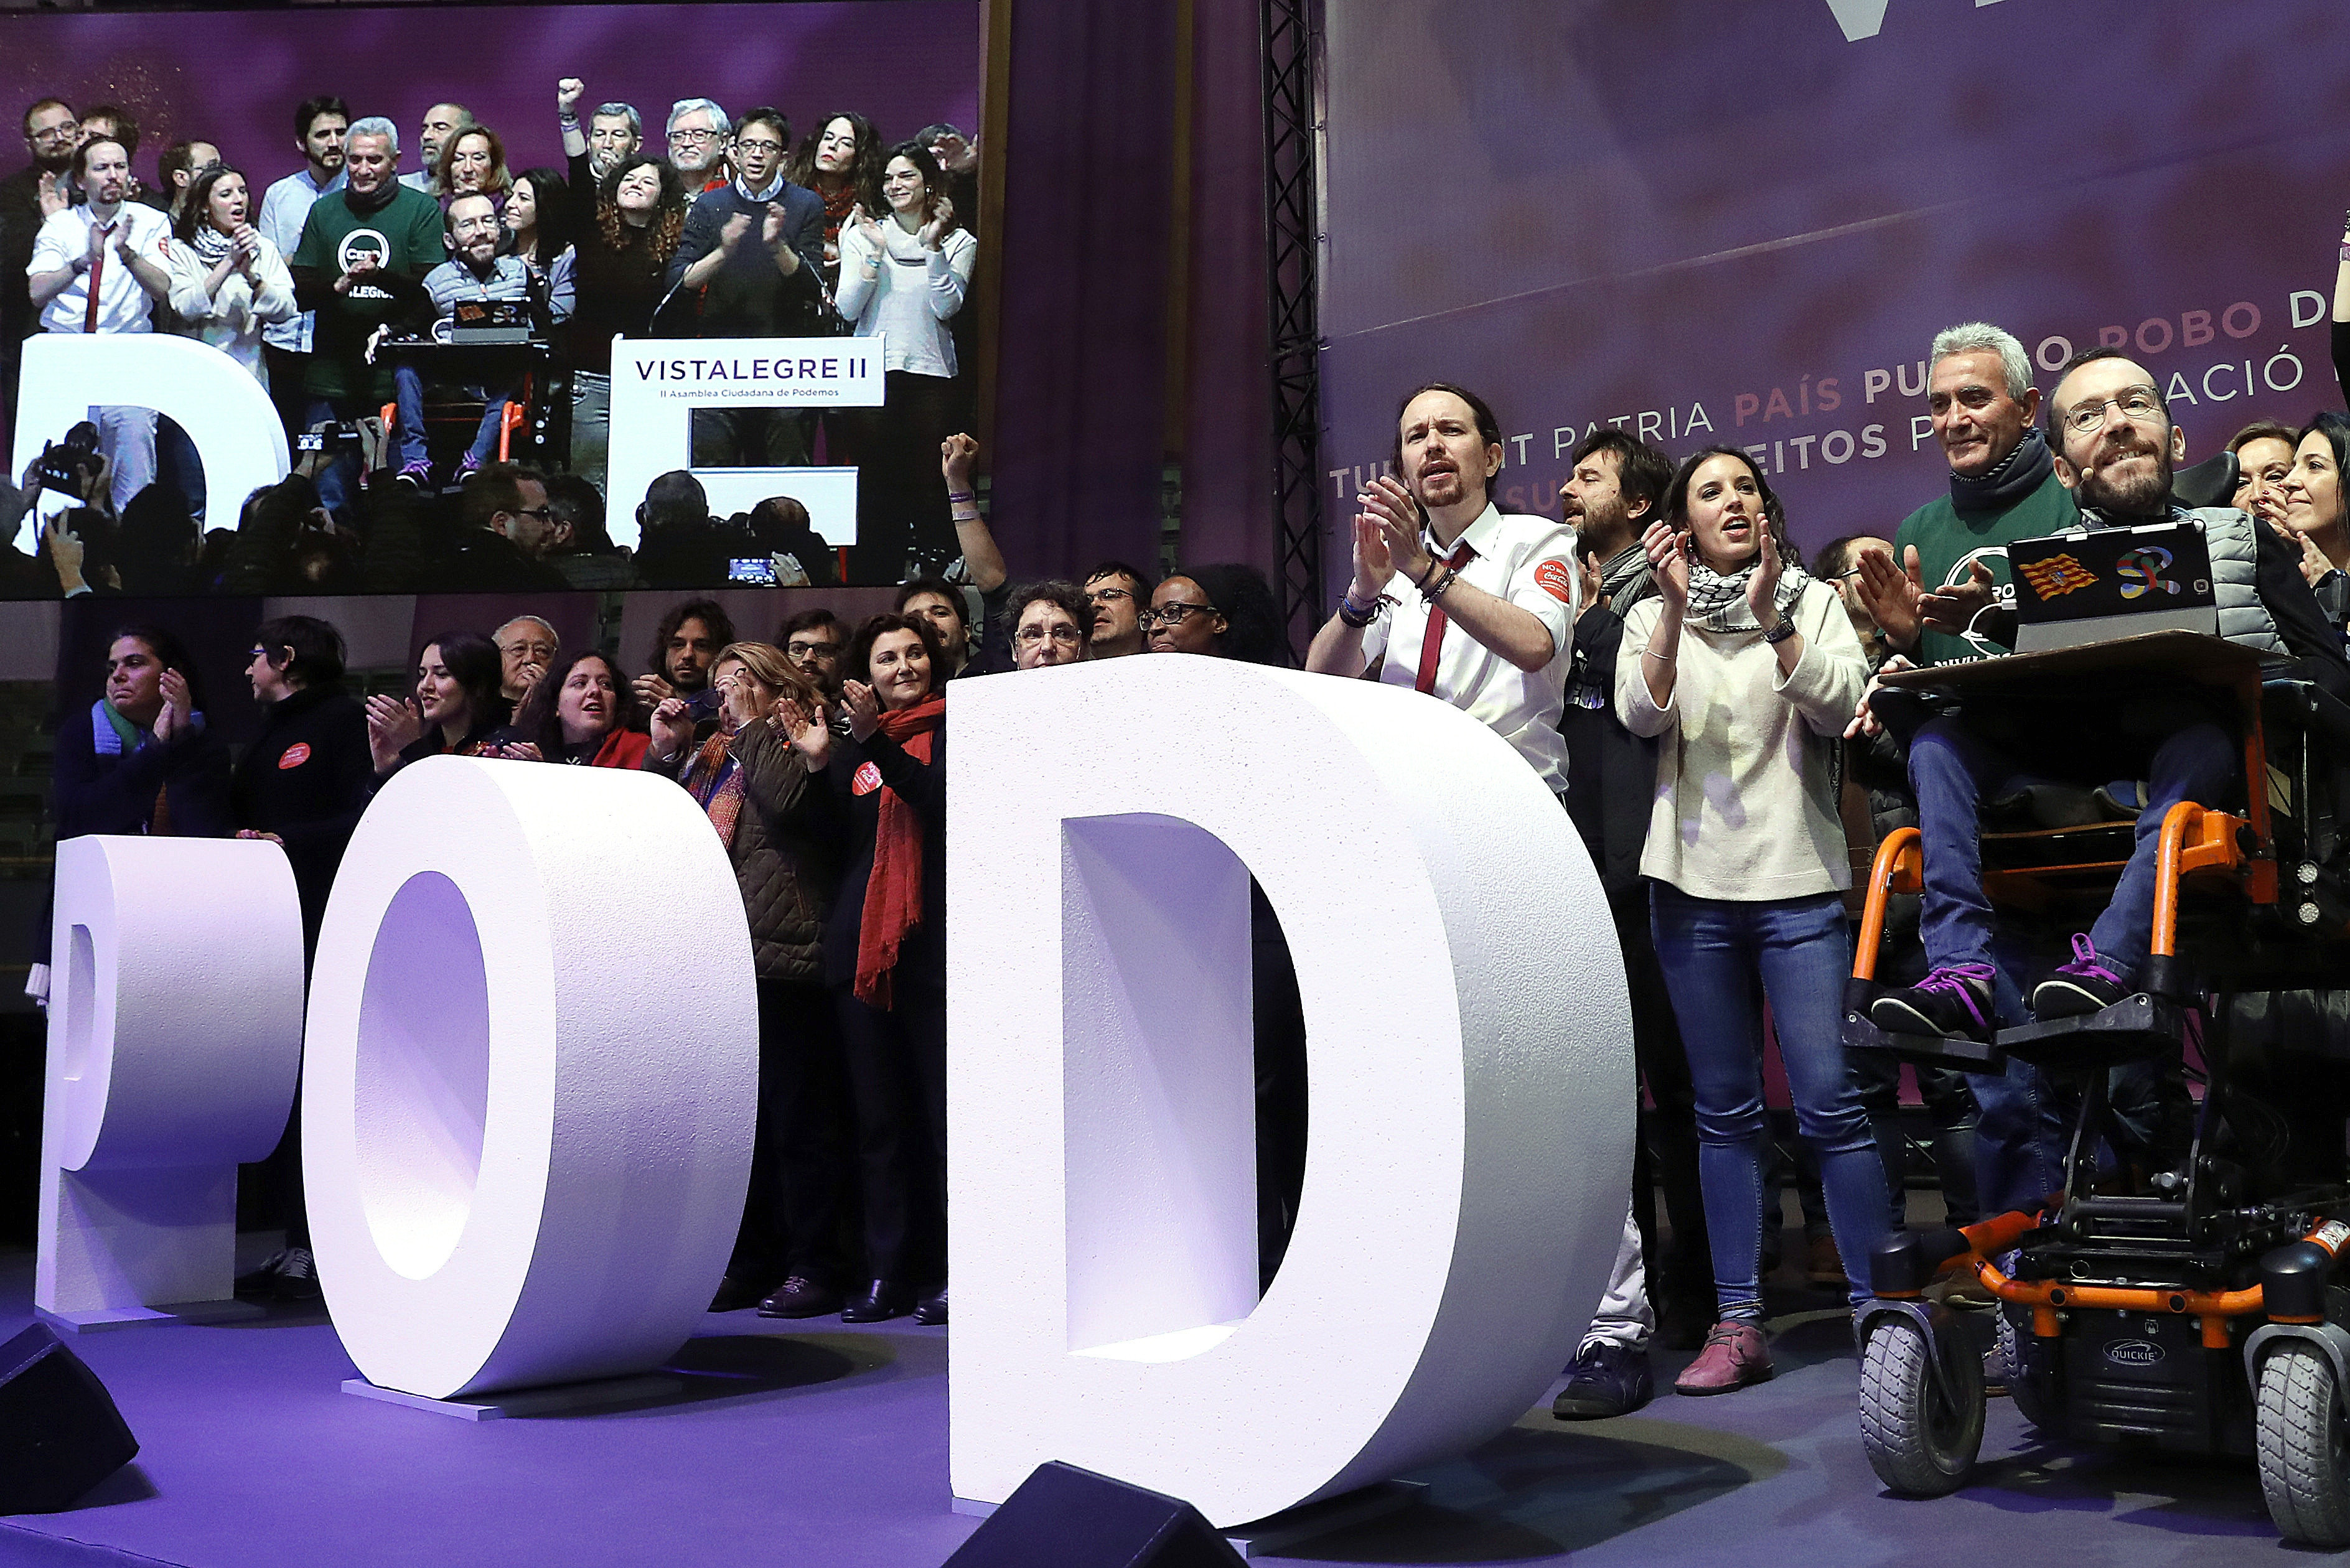 El líder de Podemos, Pablo Iglesias, junto a sus compañeros de partido, Irene Montero (3d), Diego Cañamero (2d) y Pablo Echenique (d), durante la segunda jornada de la Asamblea Ciudadana Estatal de Vistalegre II que se celebra en Madrid